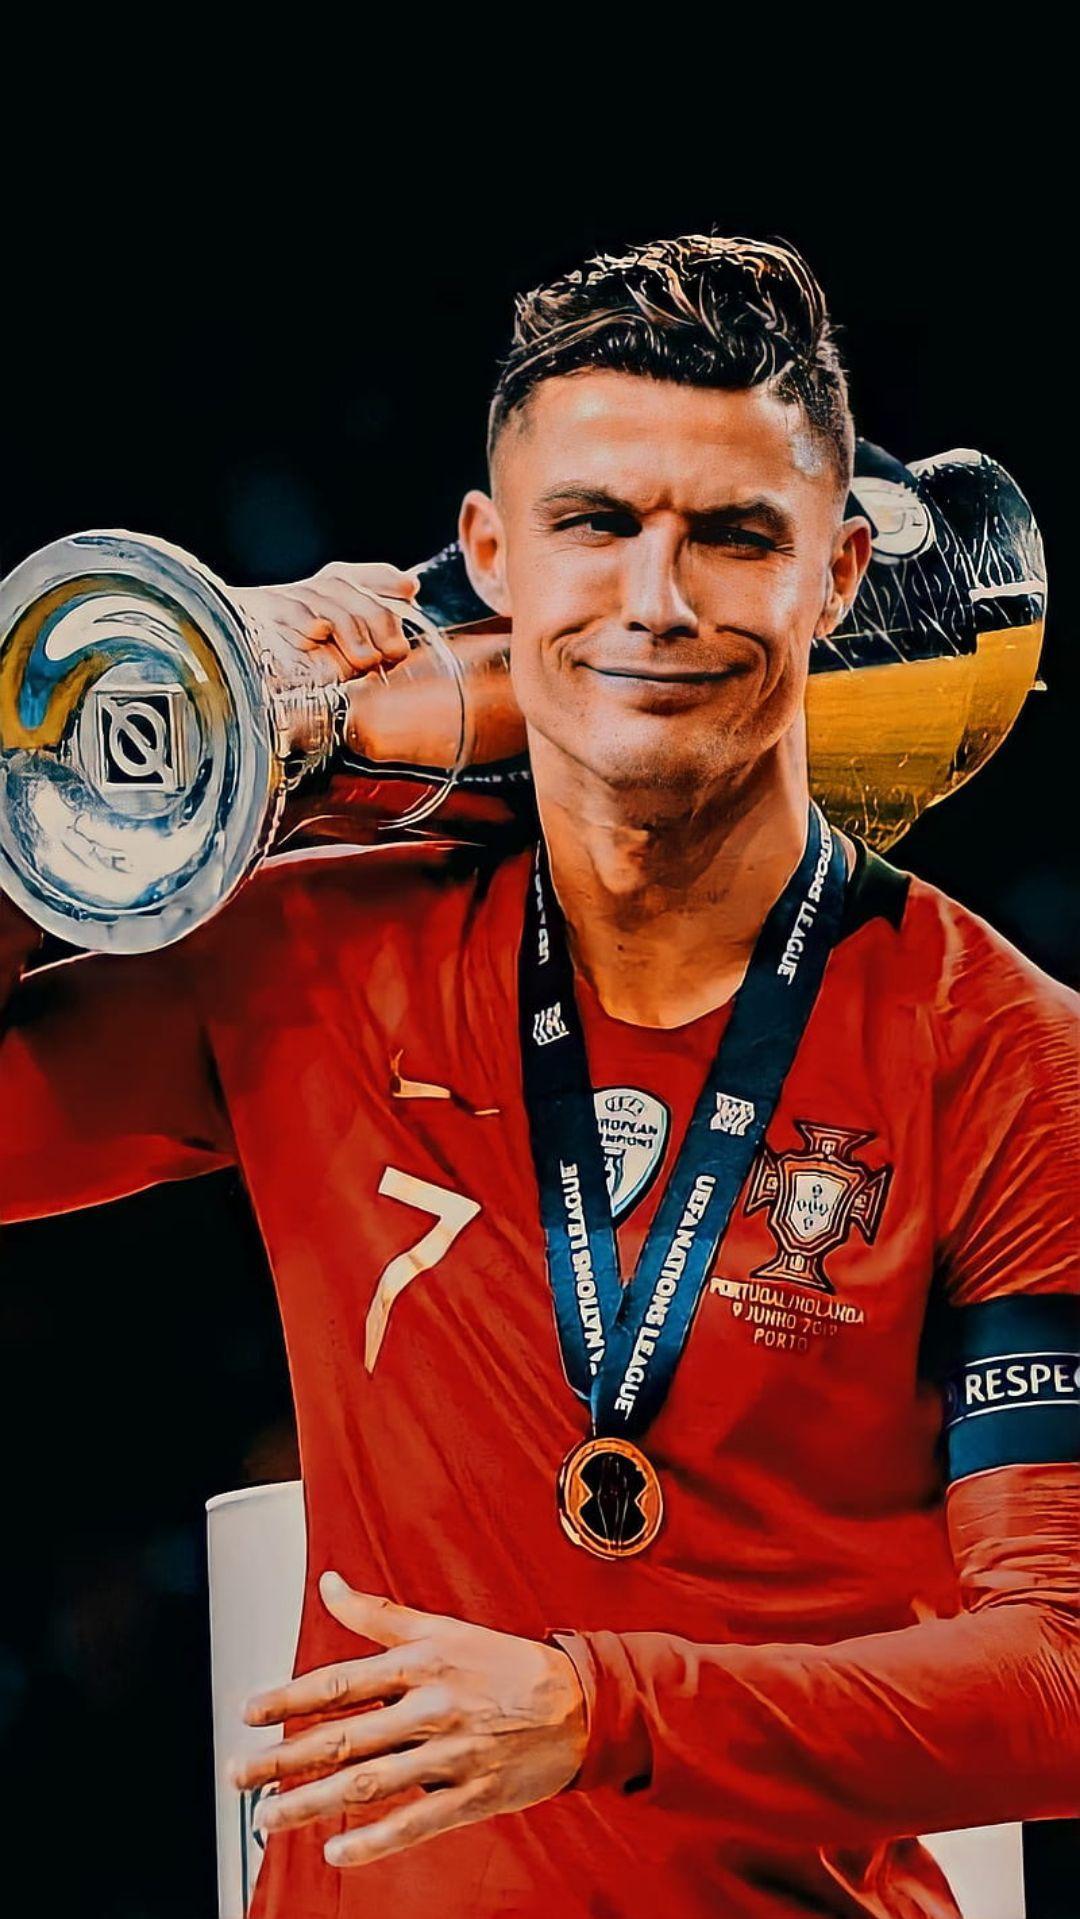 4K Cristiano Ronaldo Wallpaper